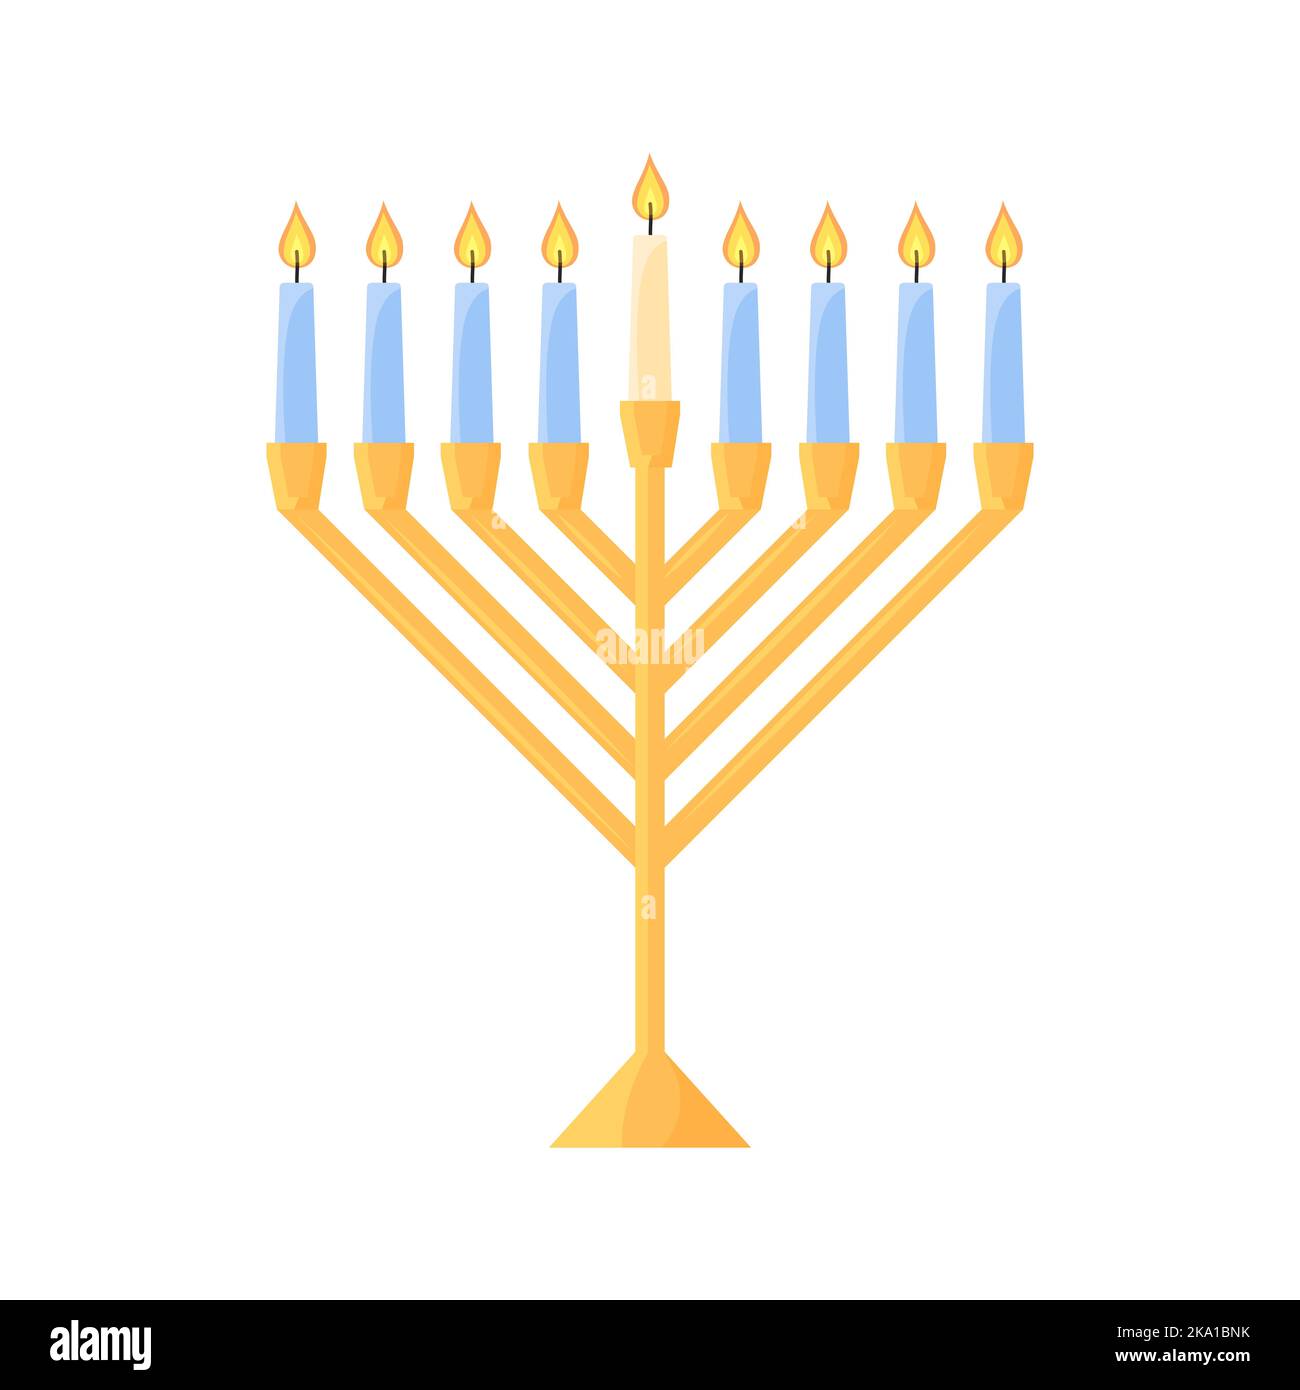 Hanukkah Menorah isoliert. Traditioneller jüdischer Chanukiah Kerzenhalter mit neun Kerzen auf weißem Hintergrund. Flache Vektorgrafik. Stock Vektor